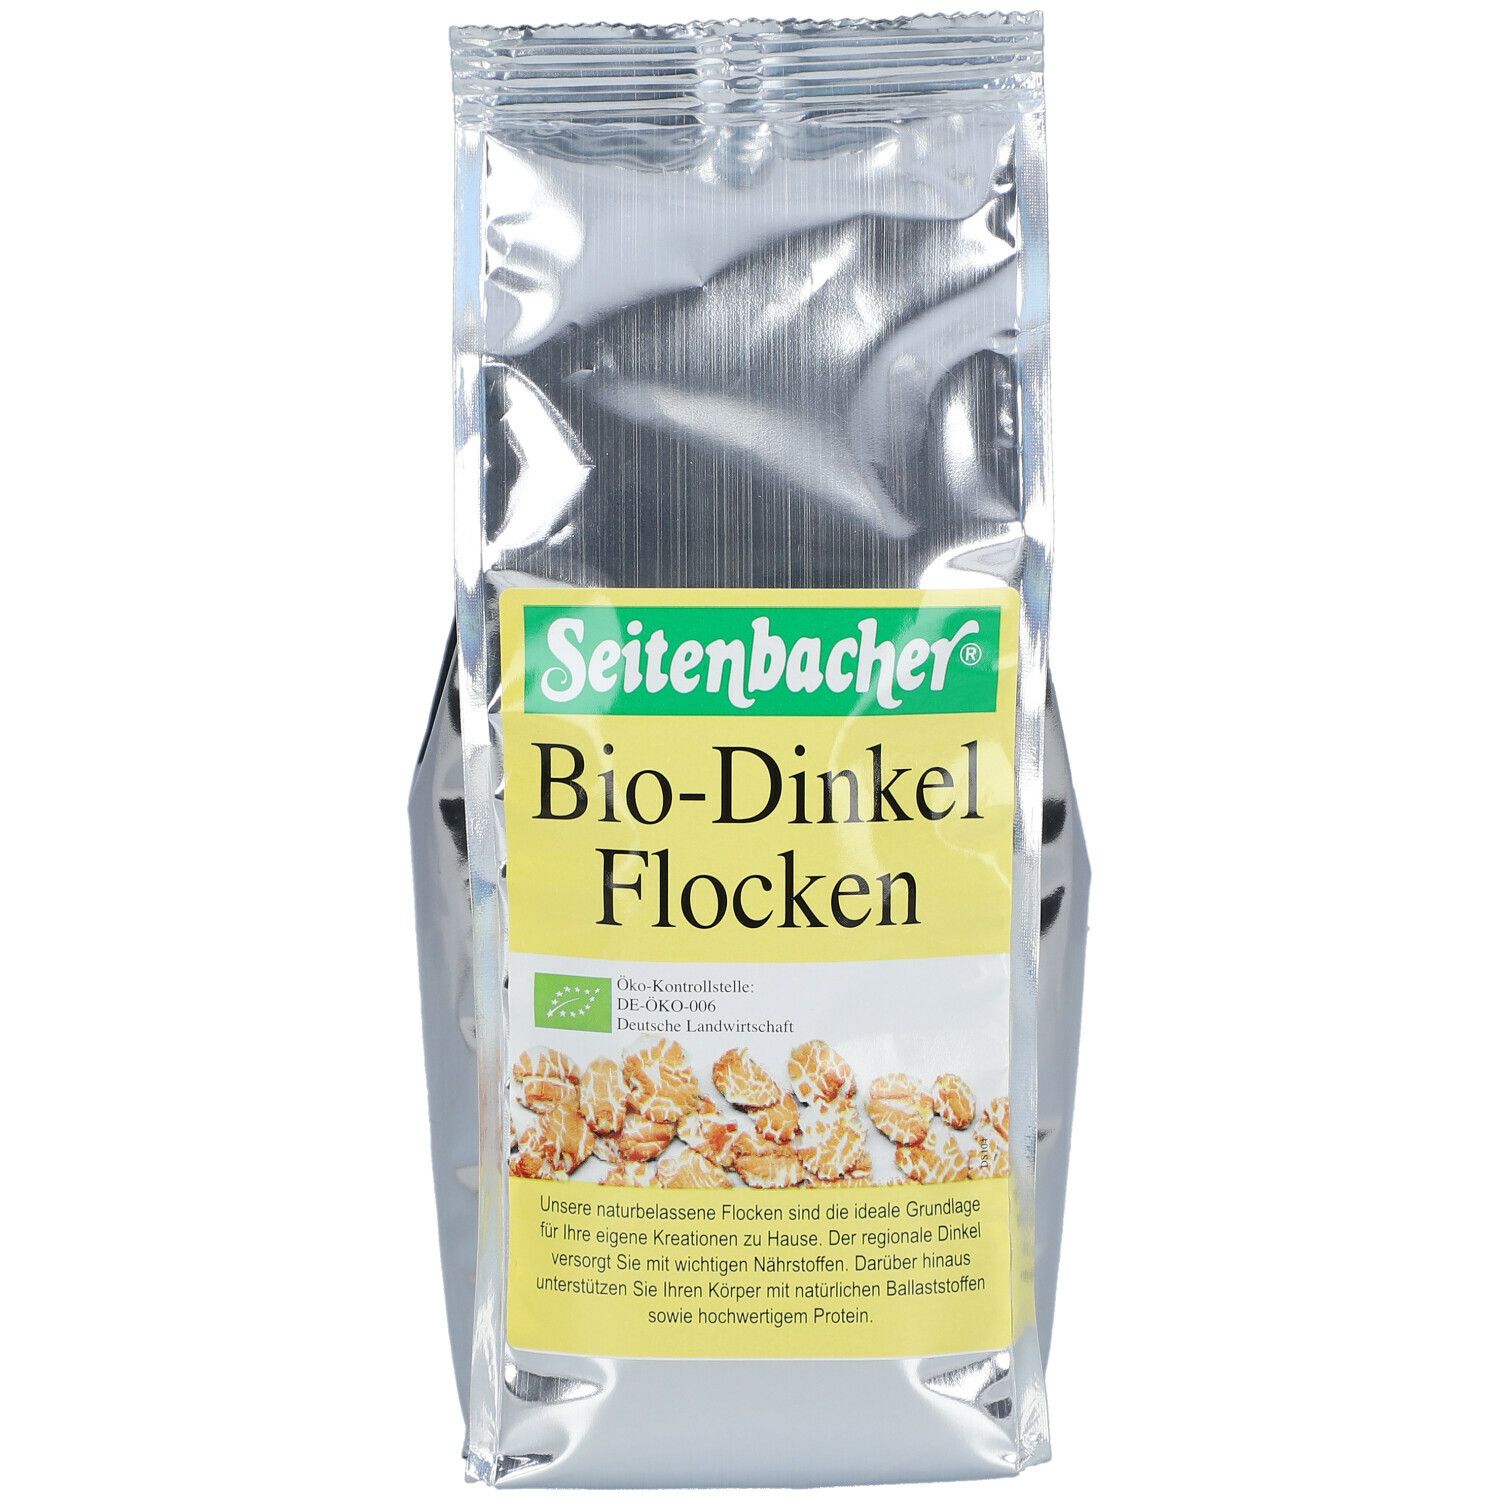 Seitenbacher® Bio-Dinkel Flocken